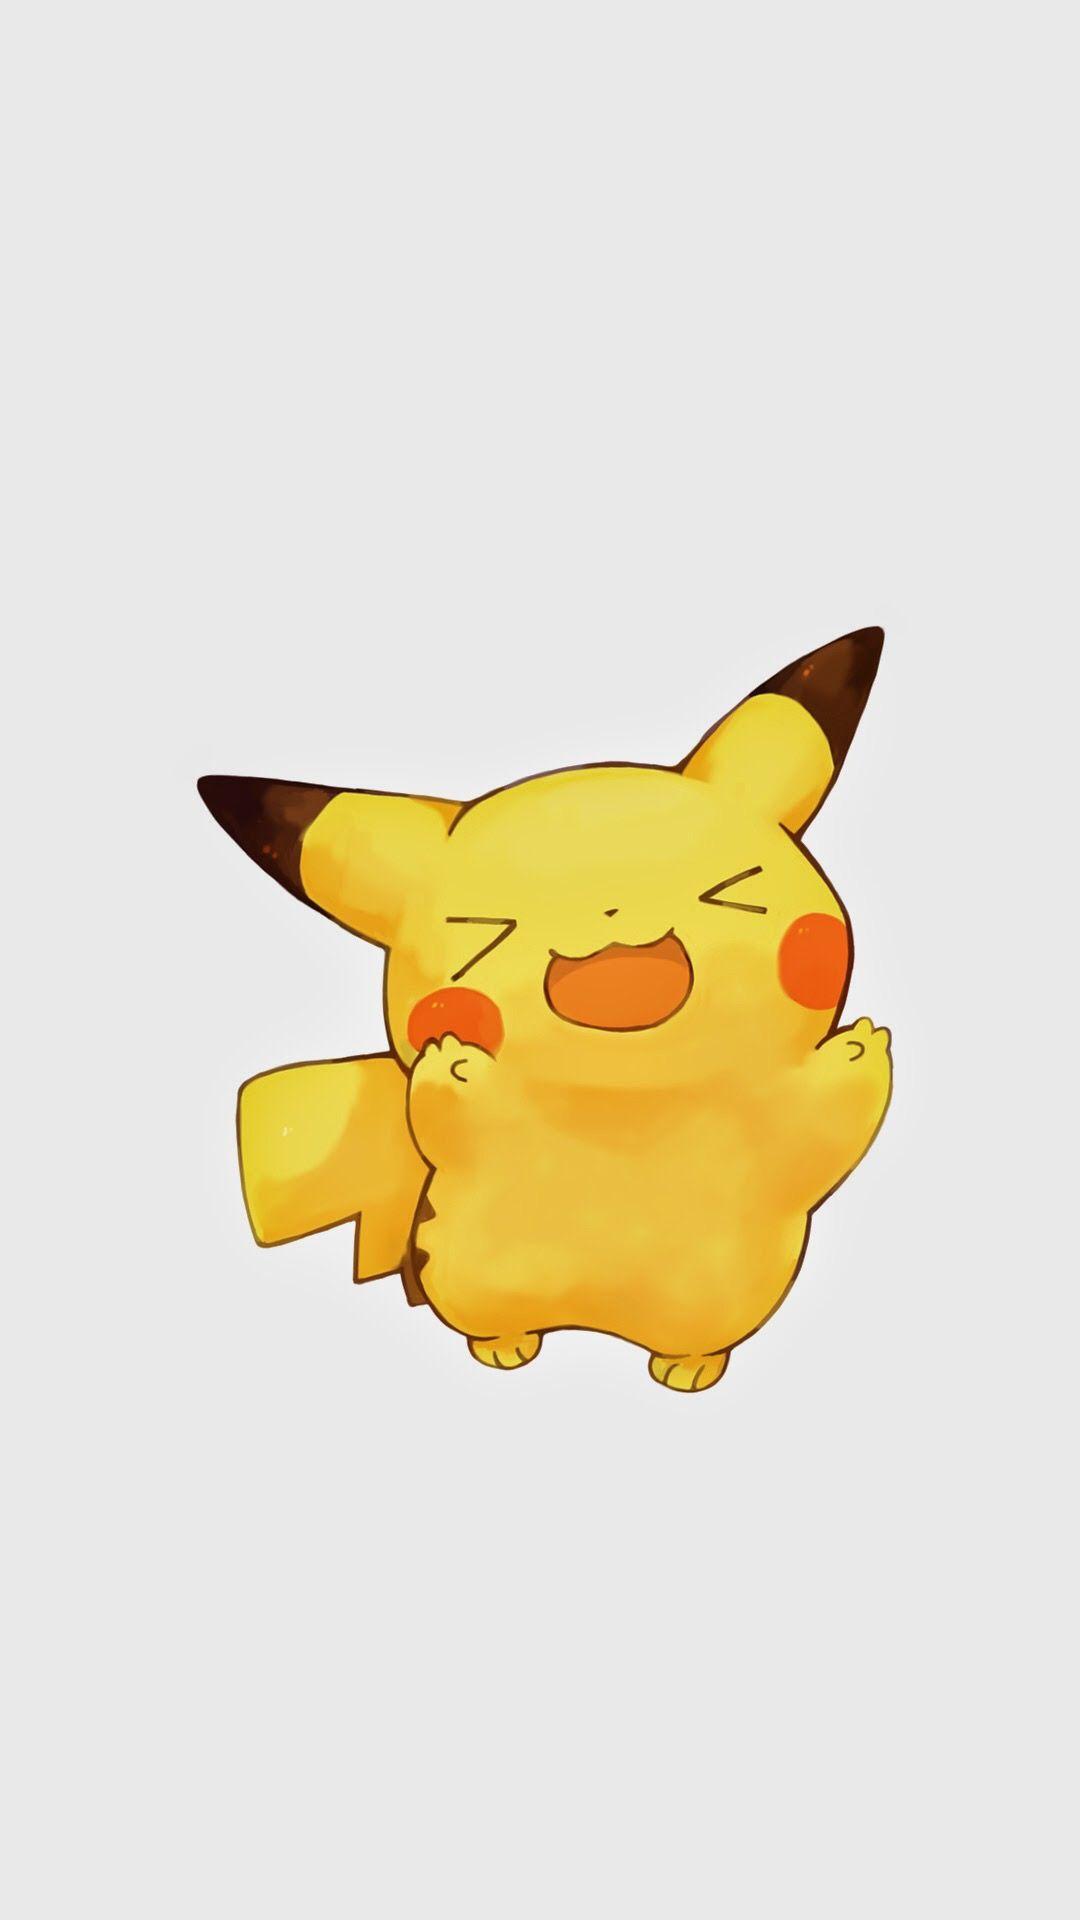 Hình ảnh chạm 1080x1920 để có thêm hình ảnh Pikachu đáng yêu ngộ nghĩnh cho điện thoại di động iPhone SC